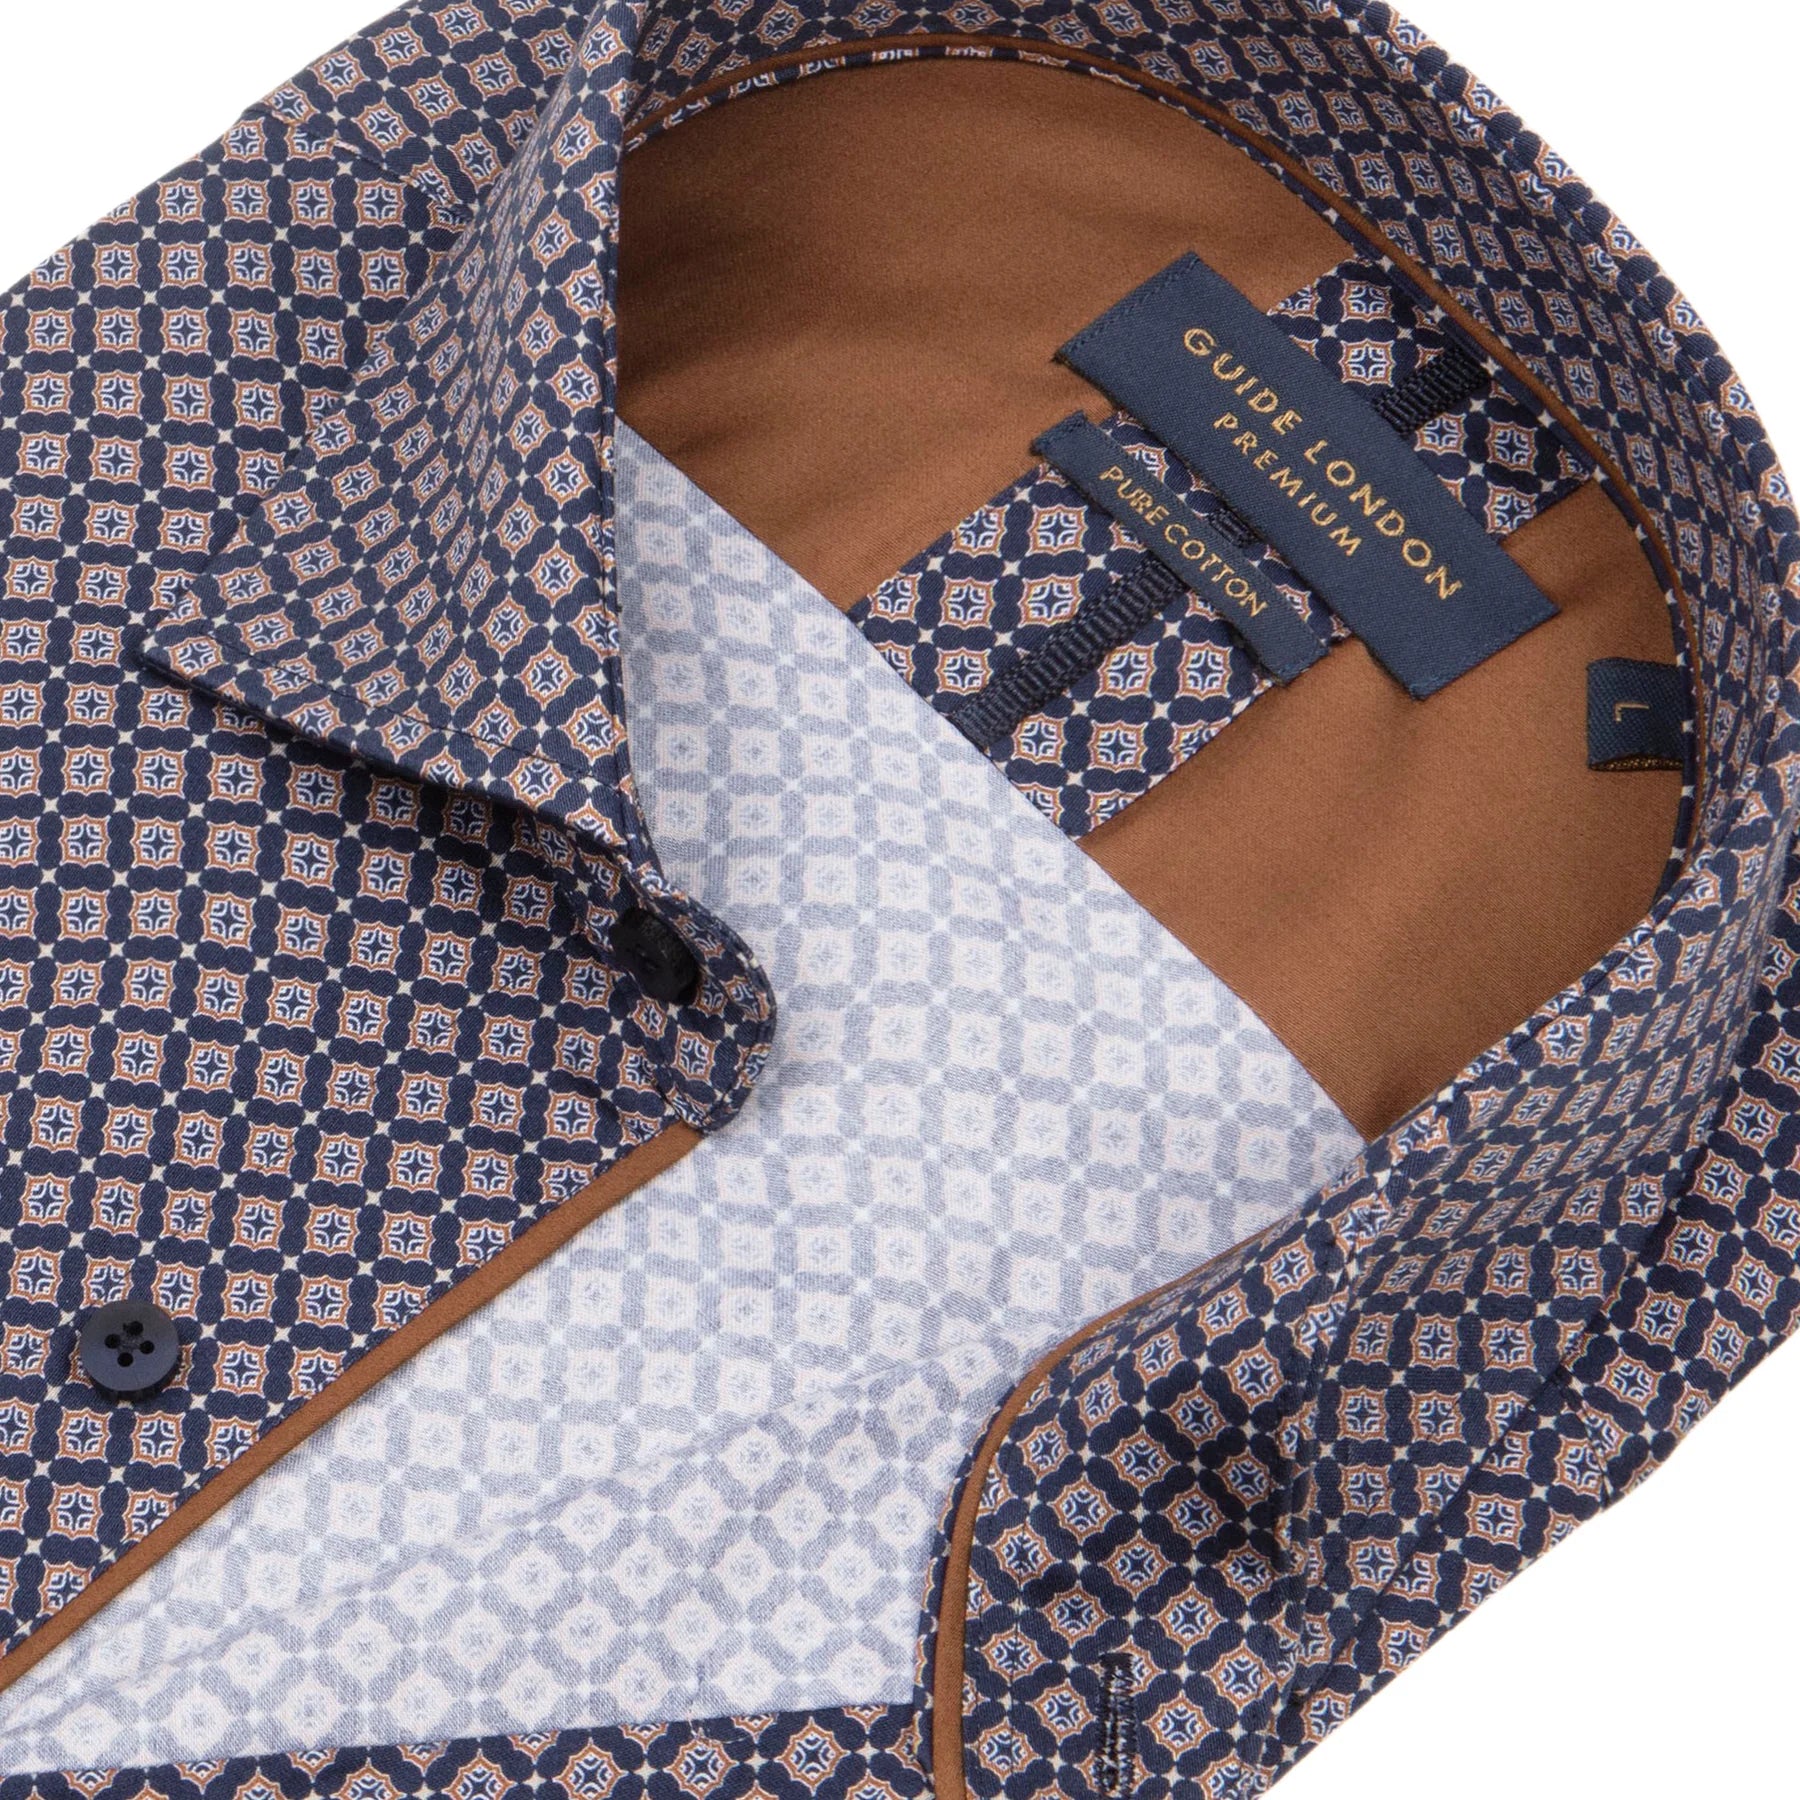 Guide London Geometric Pattern Long Sleeve Cotton Shirt LS76683 Navy/Tan #dr.kruger #dr kruger #drkruger